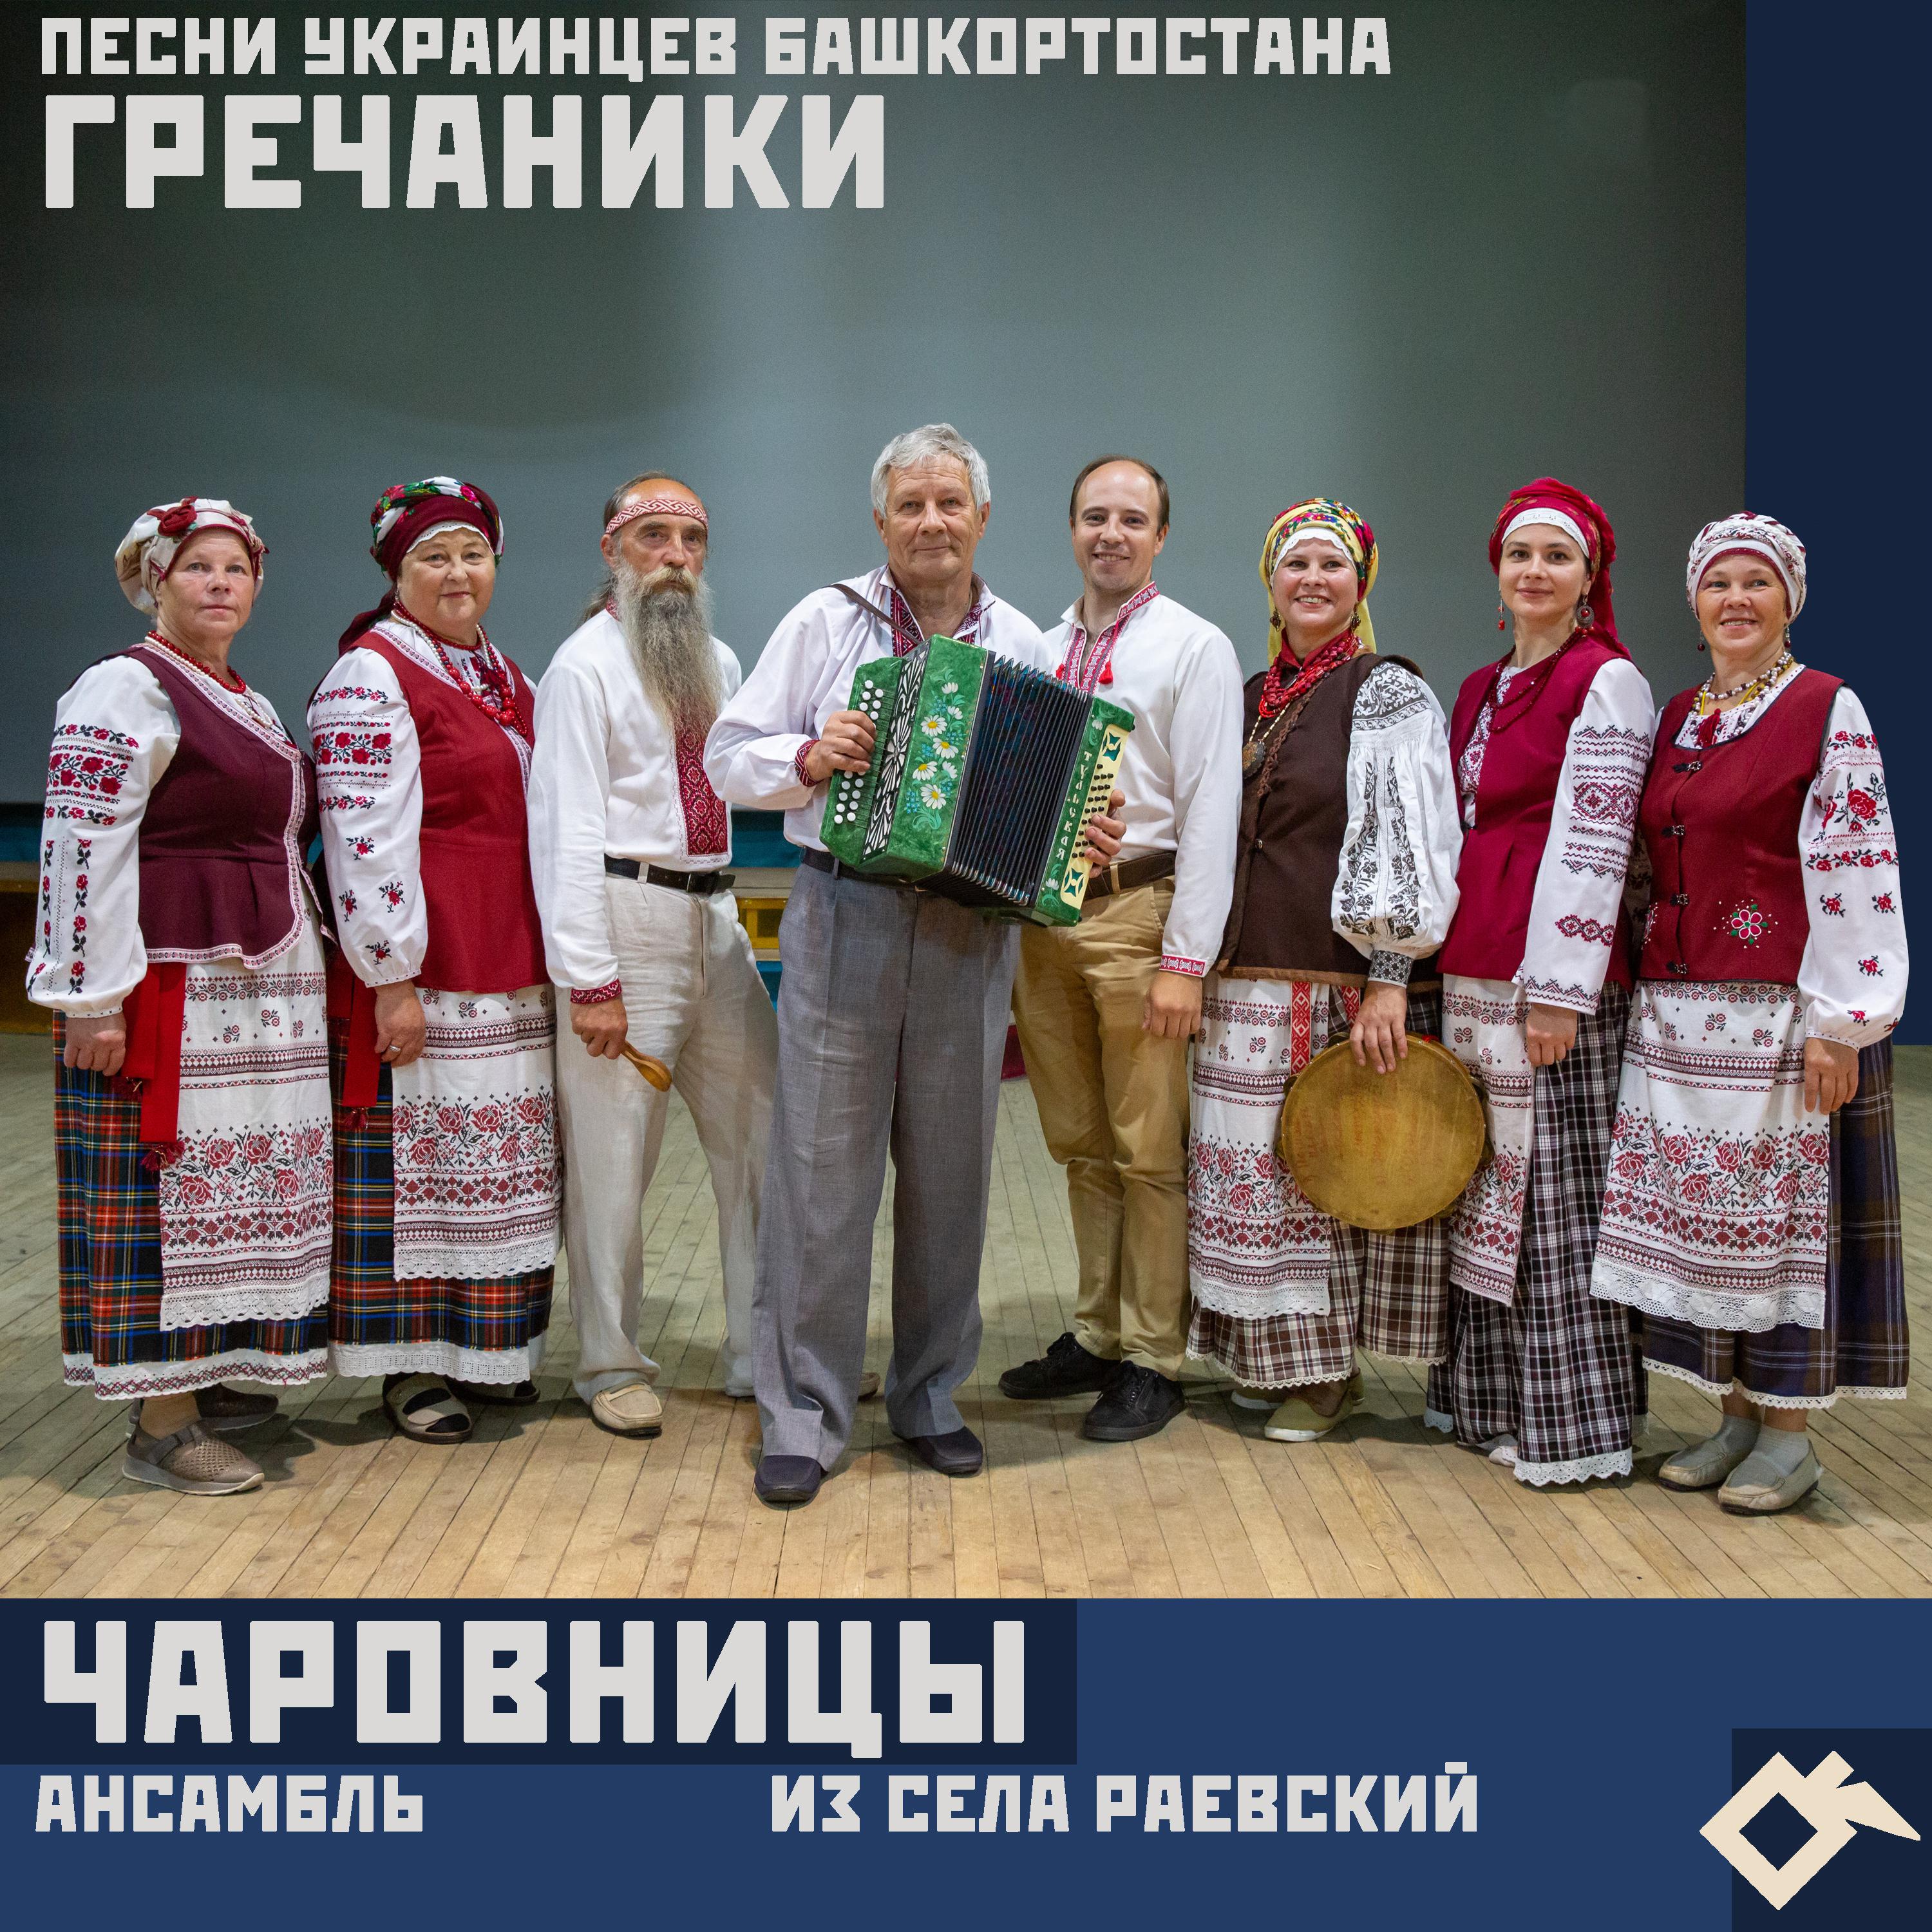 Постер альбома Гречаники: песни украинцев Башкортостана